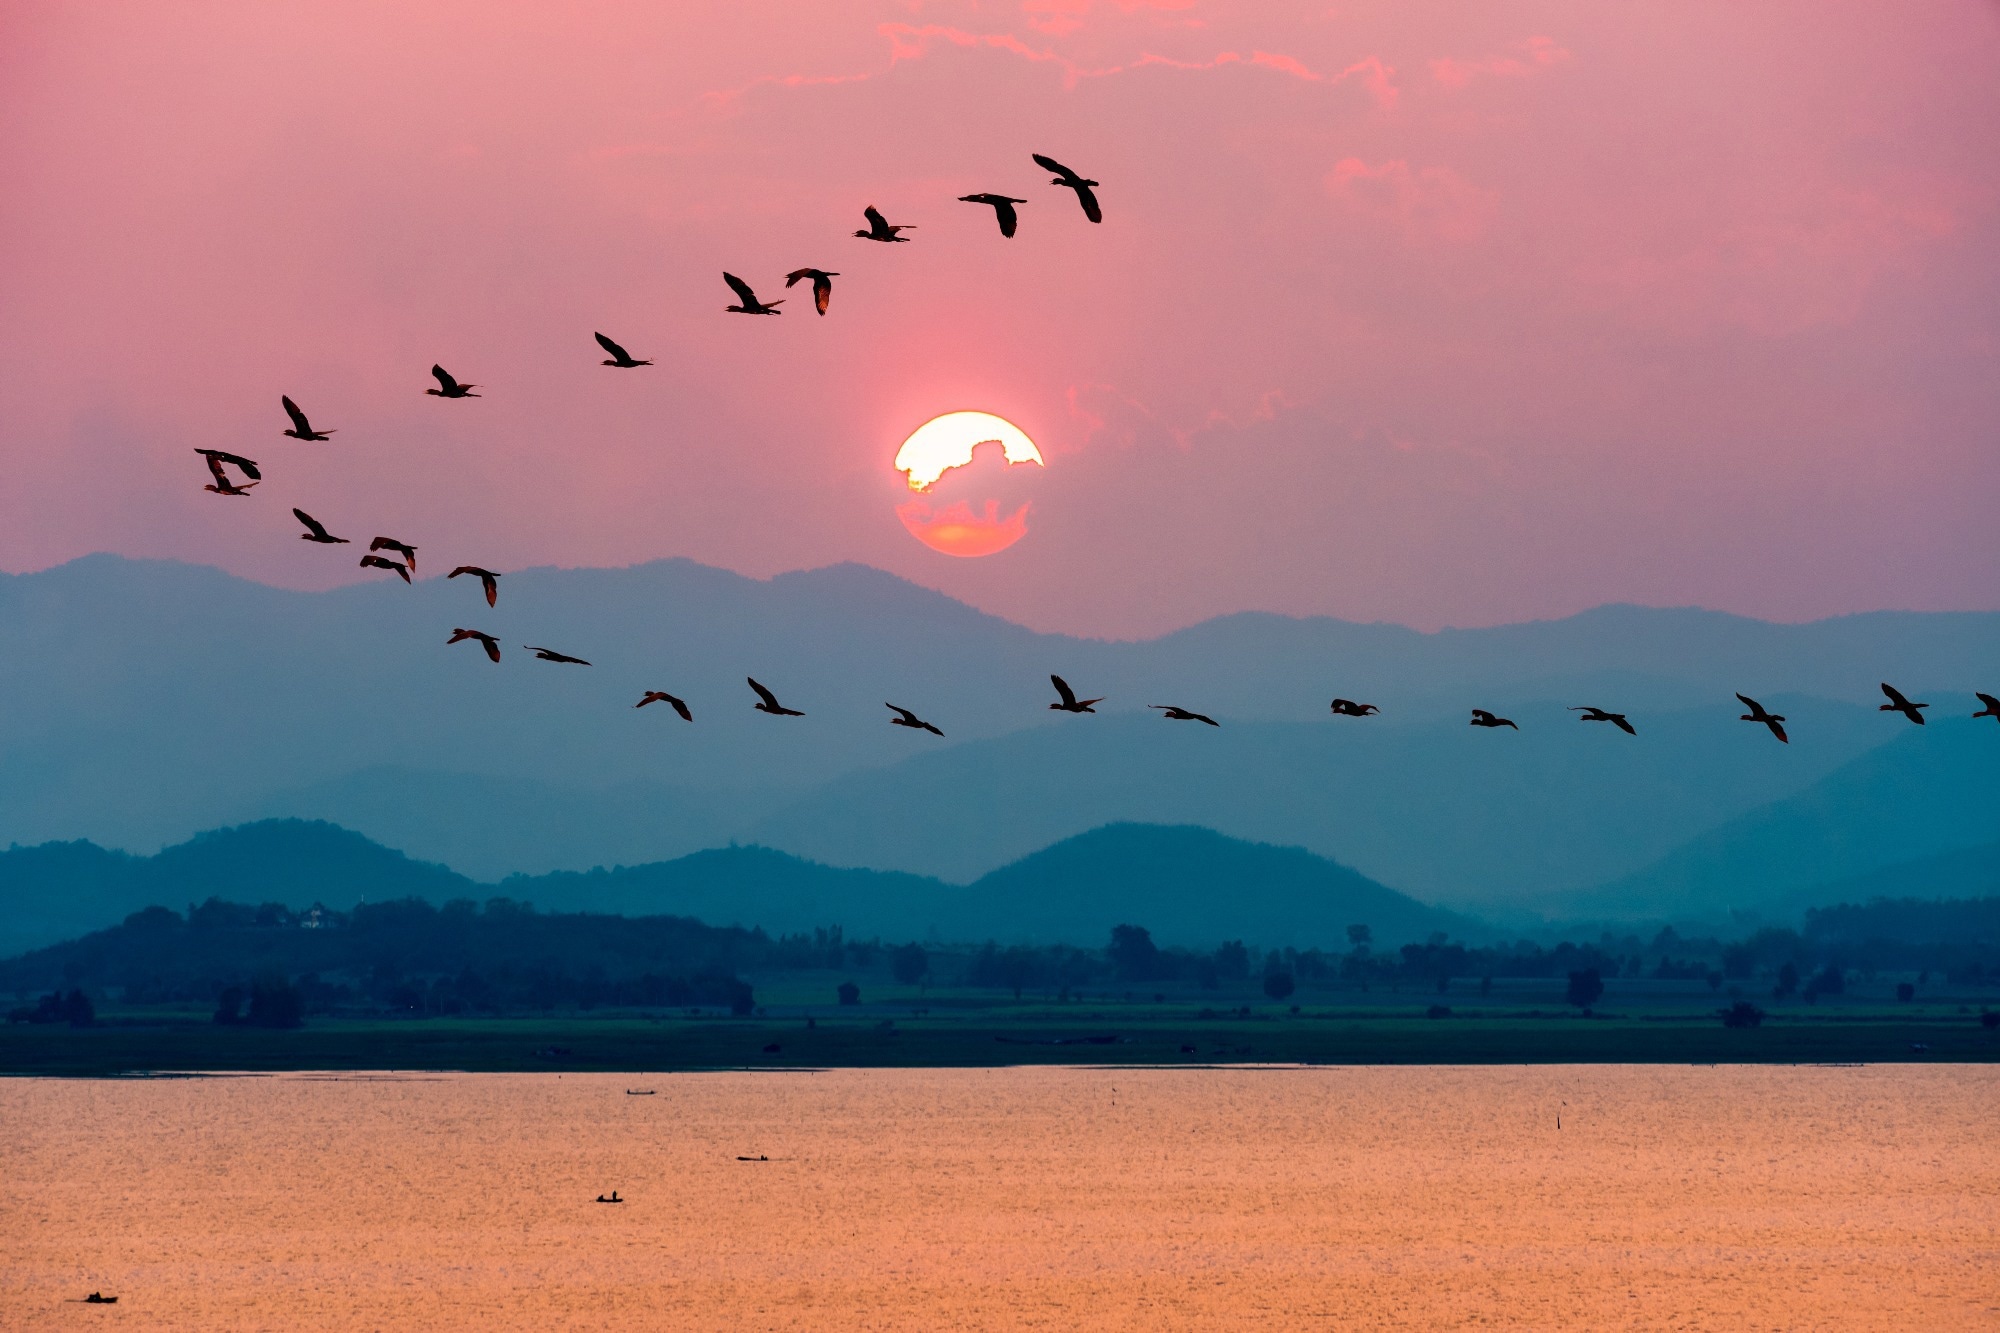 光污染对夜间迁徙鸟类的影响